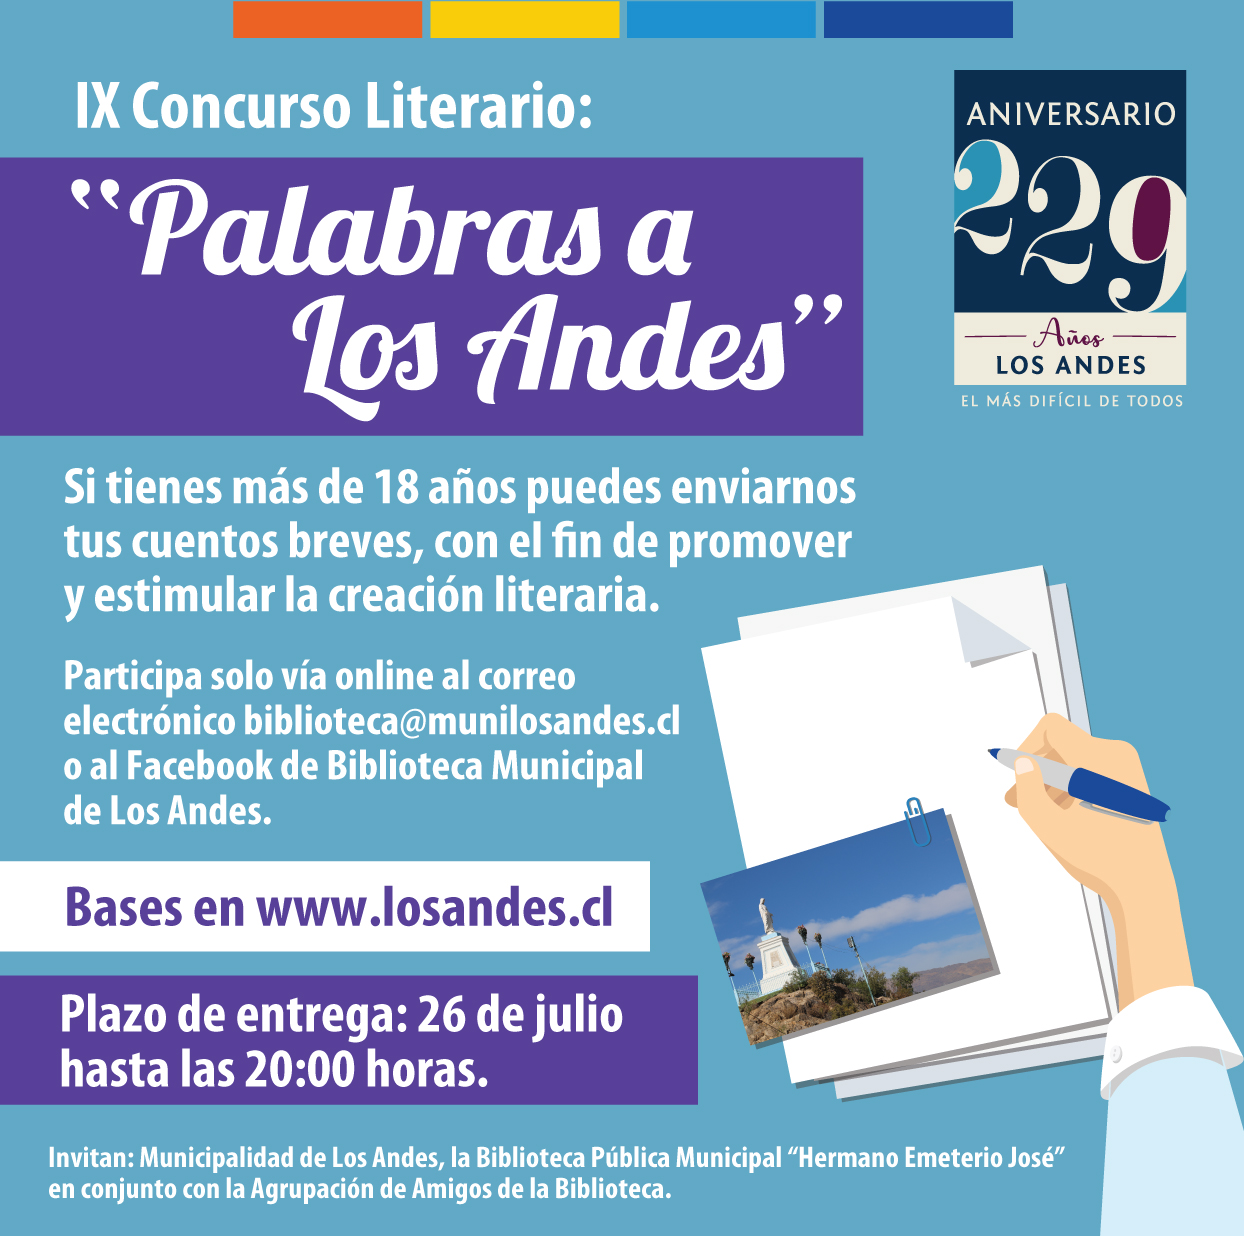 LOS ANDES: Harán concurso literario por el aniversario de Los Andes vía online